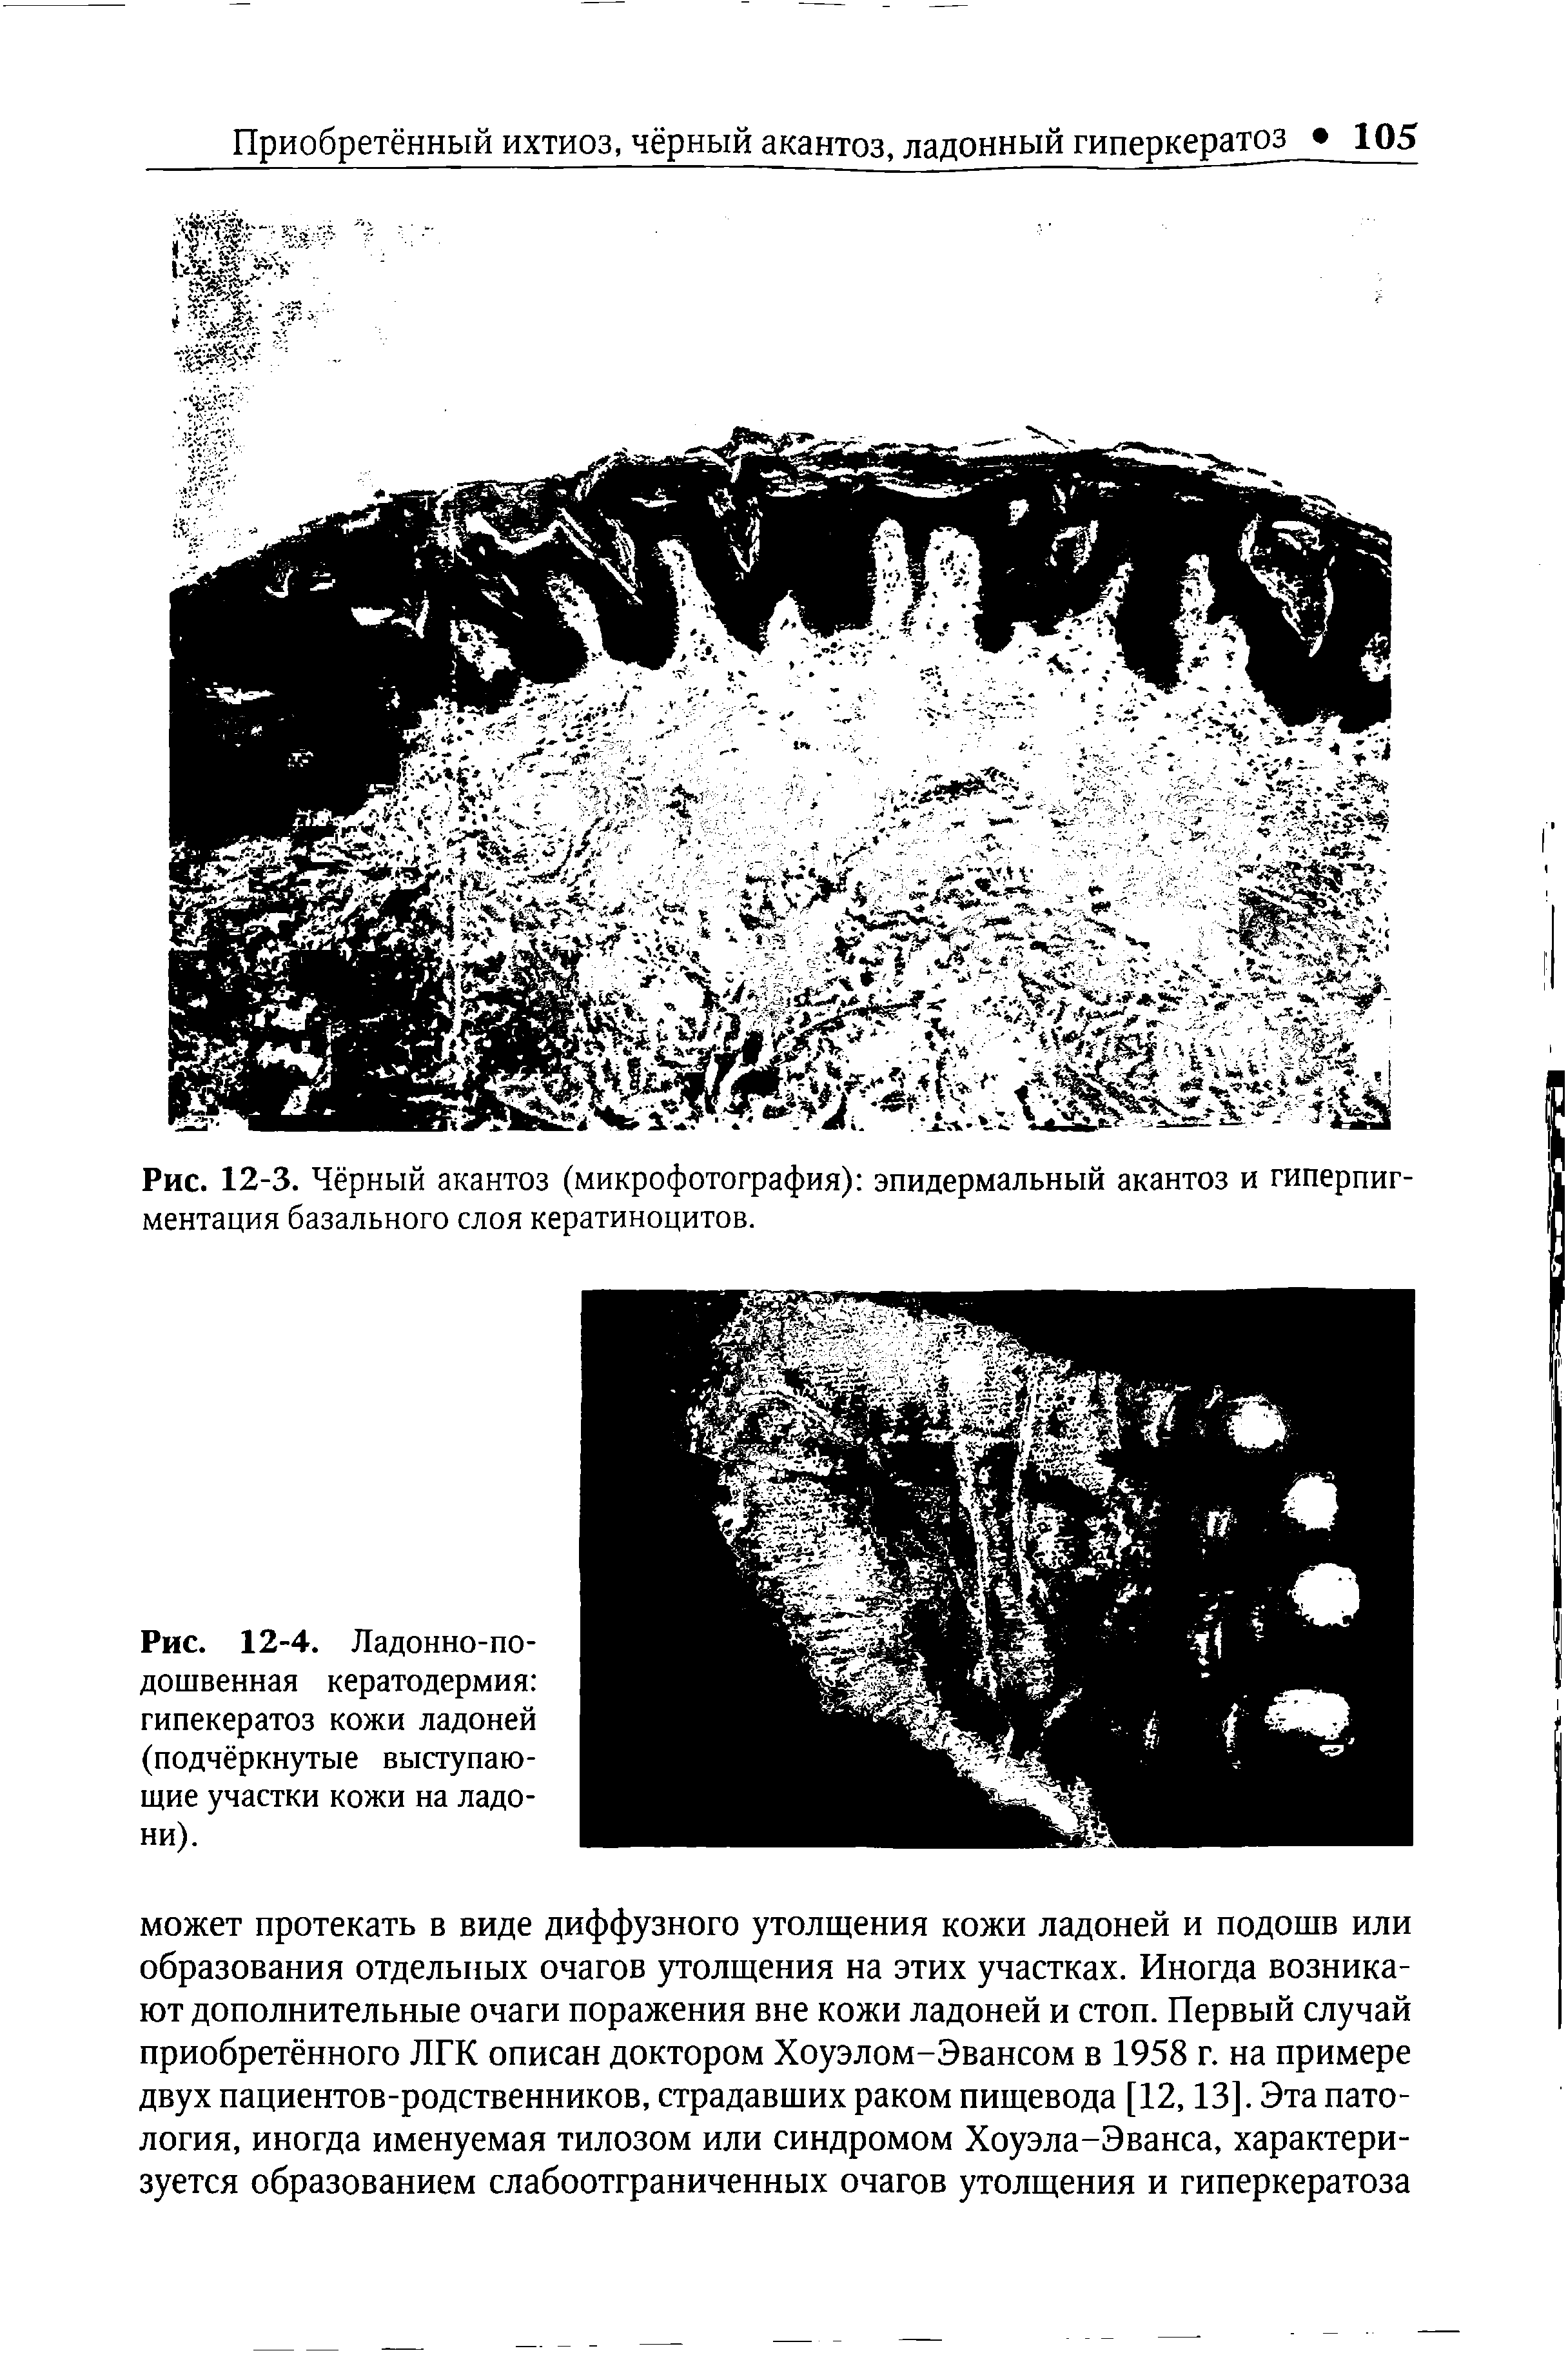 Рис. 12-3. Чёрный акантоз (микрофотография) эпидермальный акантоз и гиперпигментация базального слоя кератиноцитов.